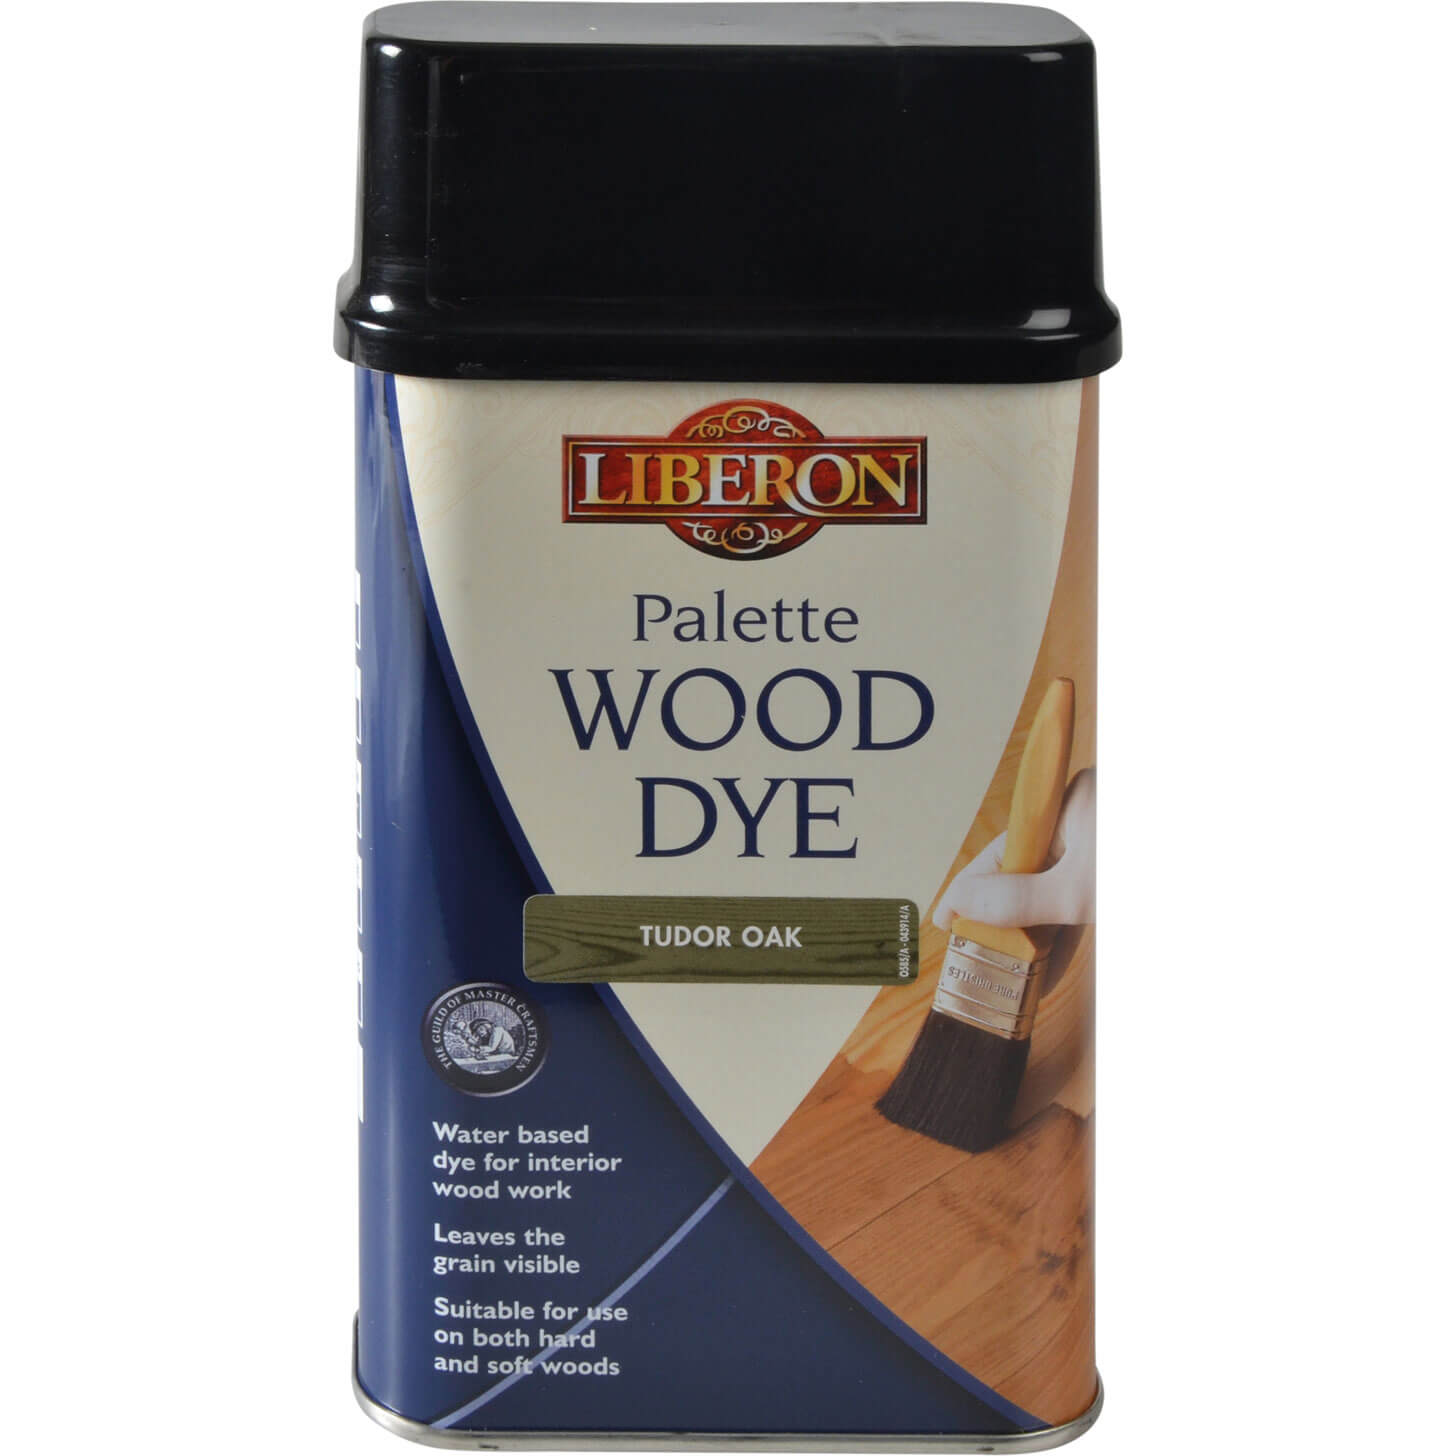 Image of Liberon Palette Wood Dye Tudor Oak 500ml